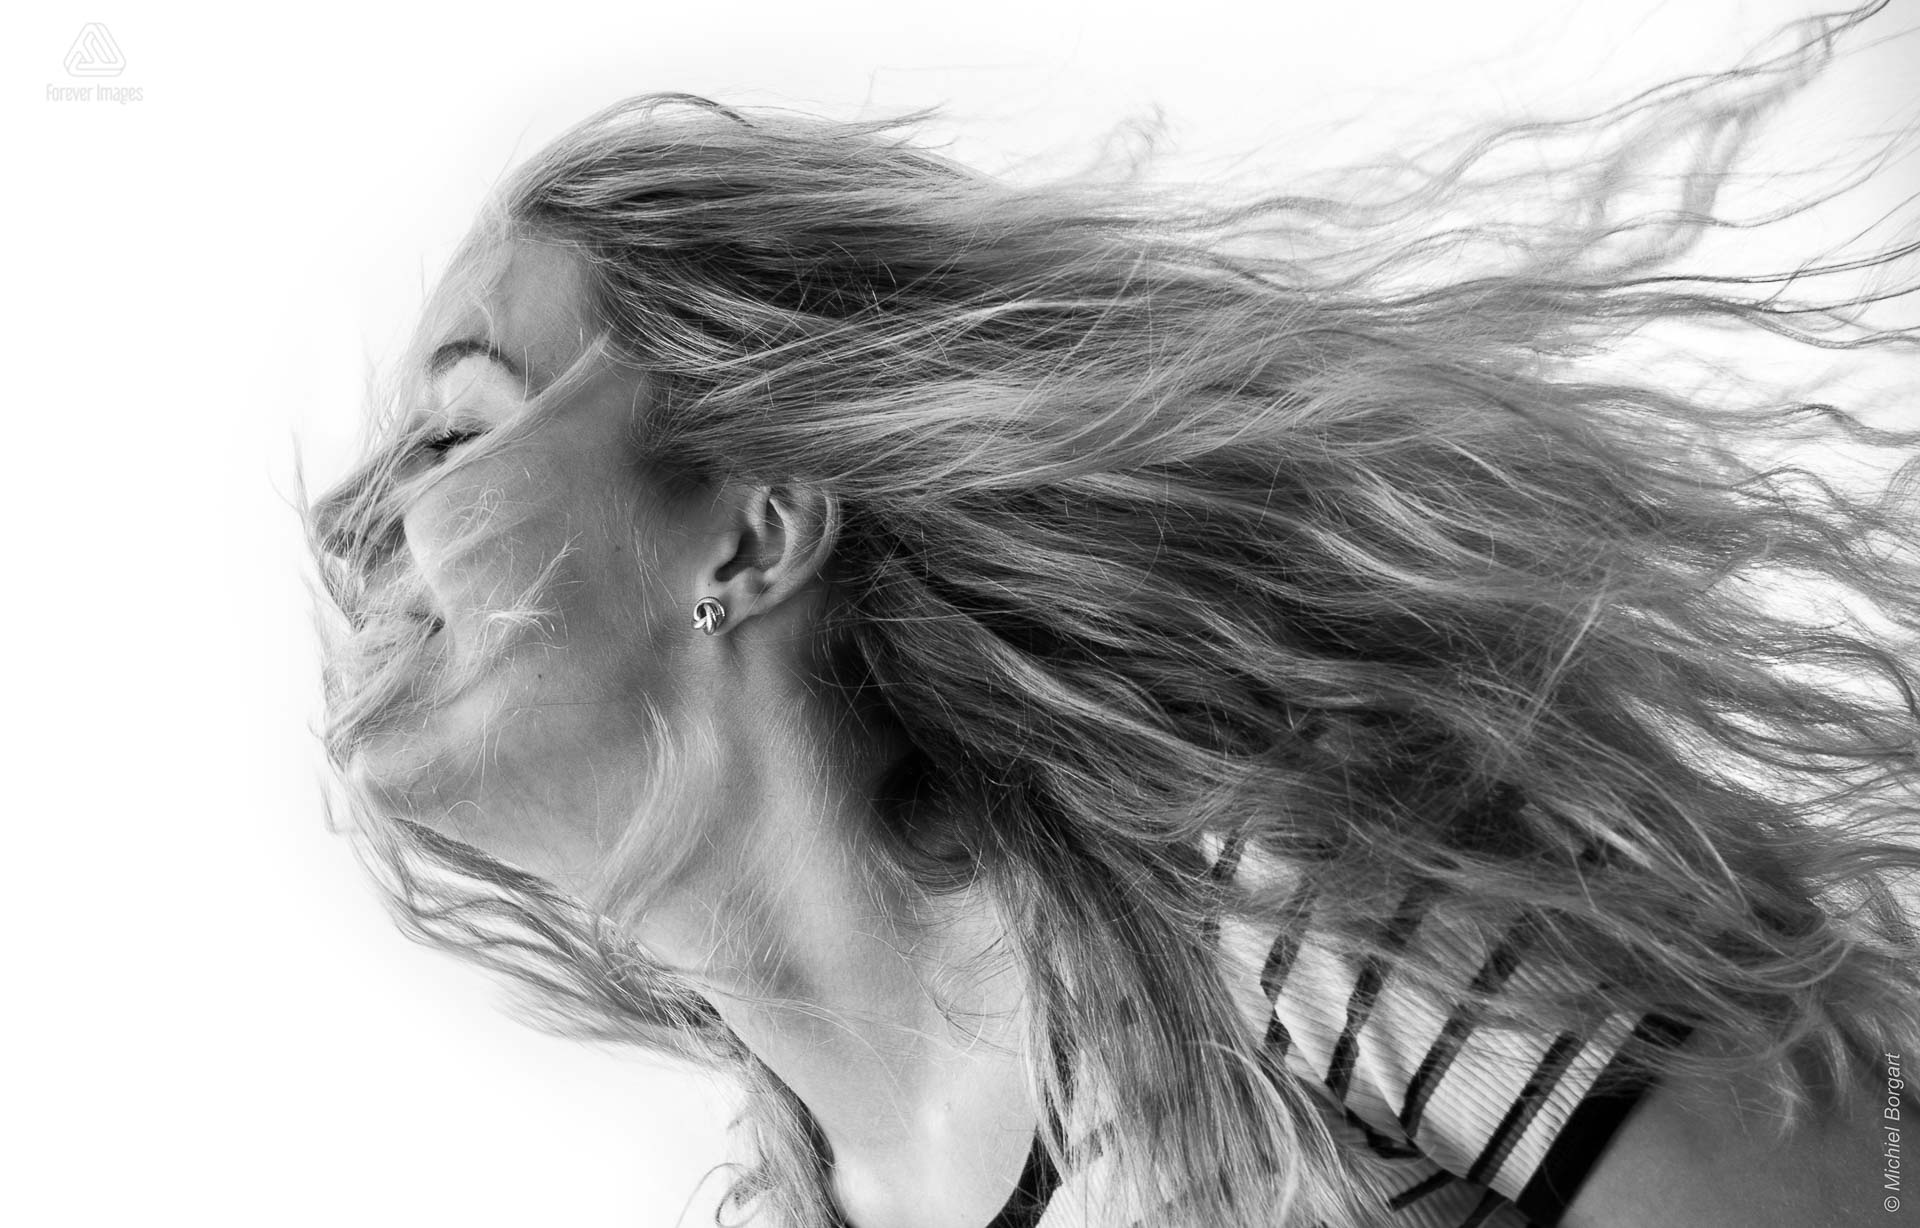 Portretfoto in zwart-wit jonge blonde dame met het haar los en in haar gezicht | Nicolette | Portretfotograaf Michiel Borgart - Forever Images.